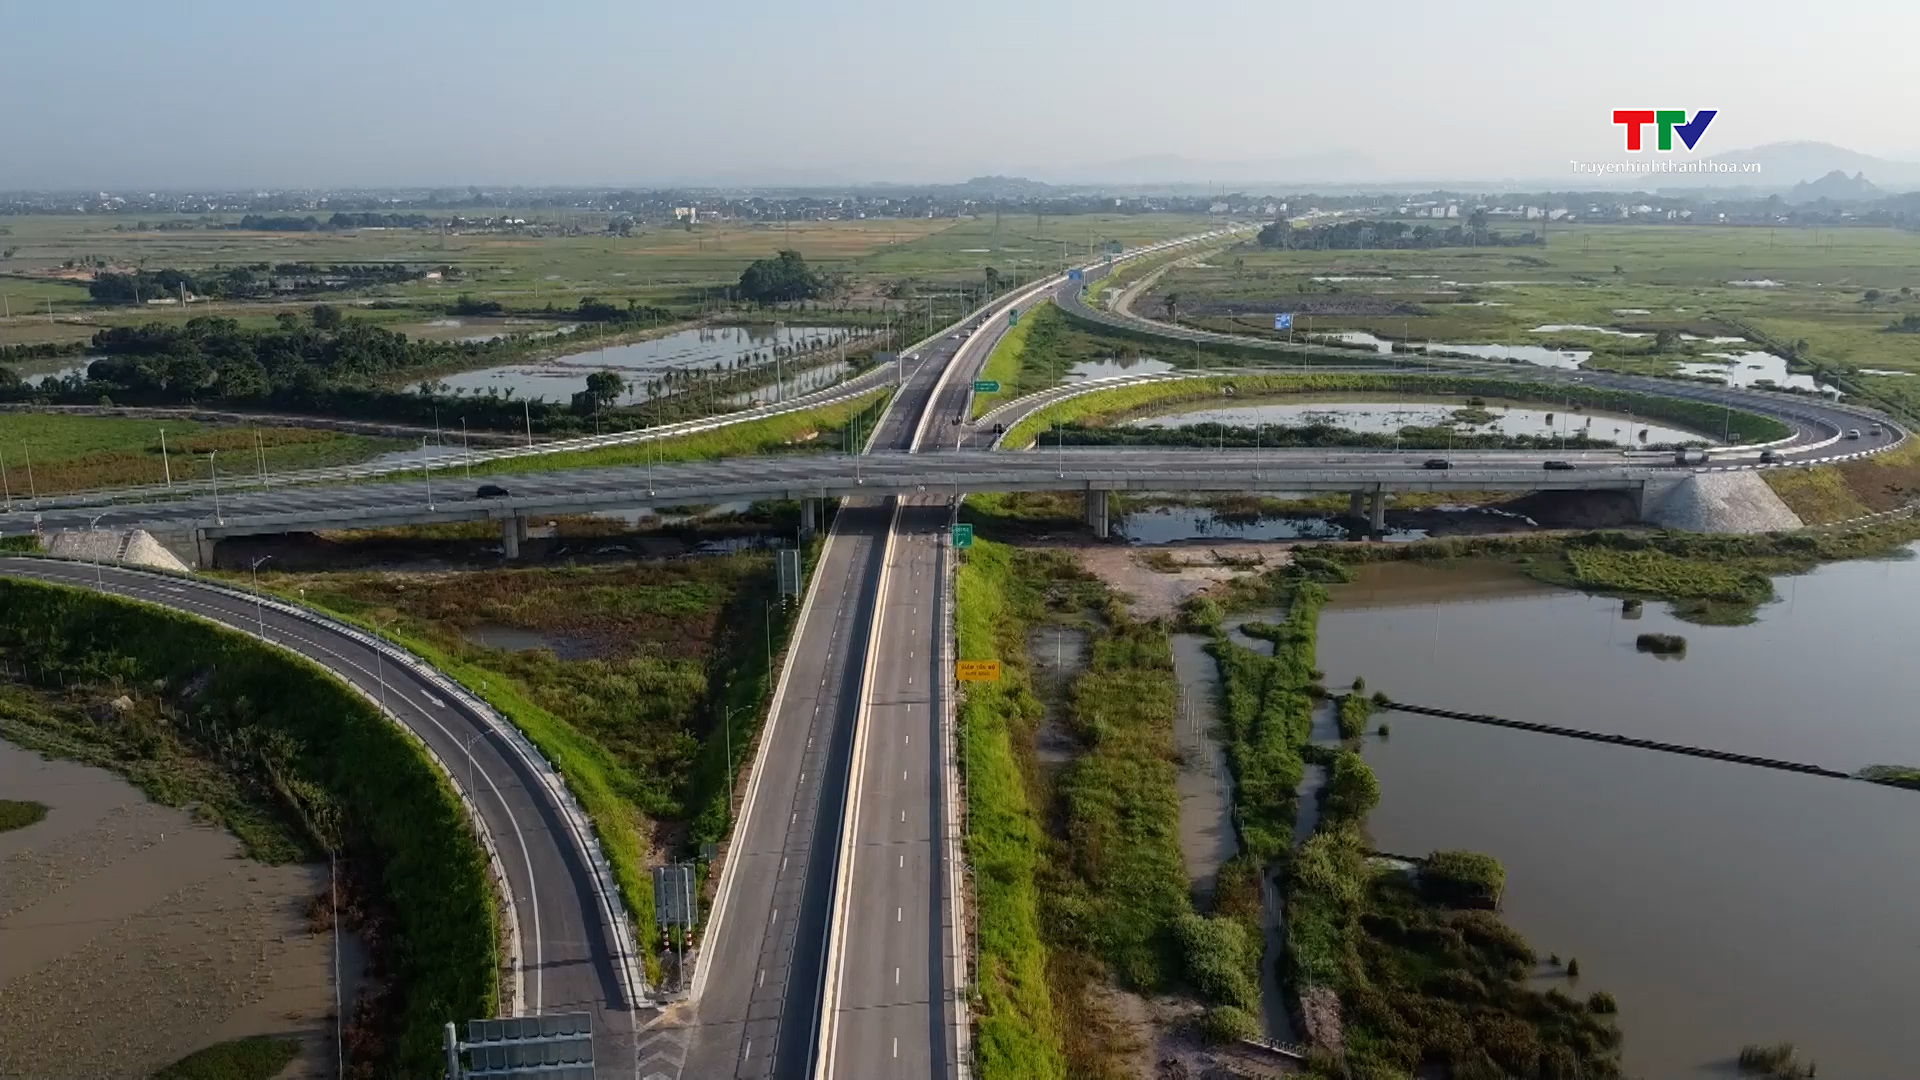 Khánh thành đường bộ cao tốc đoạn Quốc lộ 45 - Nghi Sơn và Nghi Sơn - Diễn Châu - Ảnh 2.